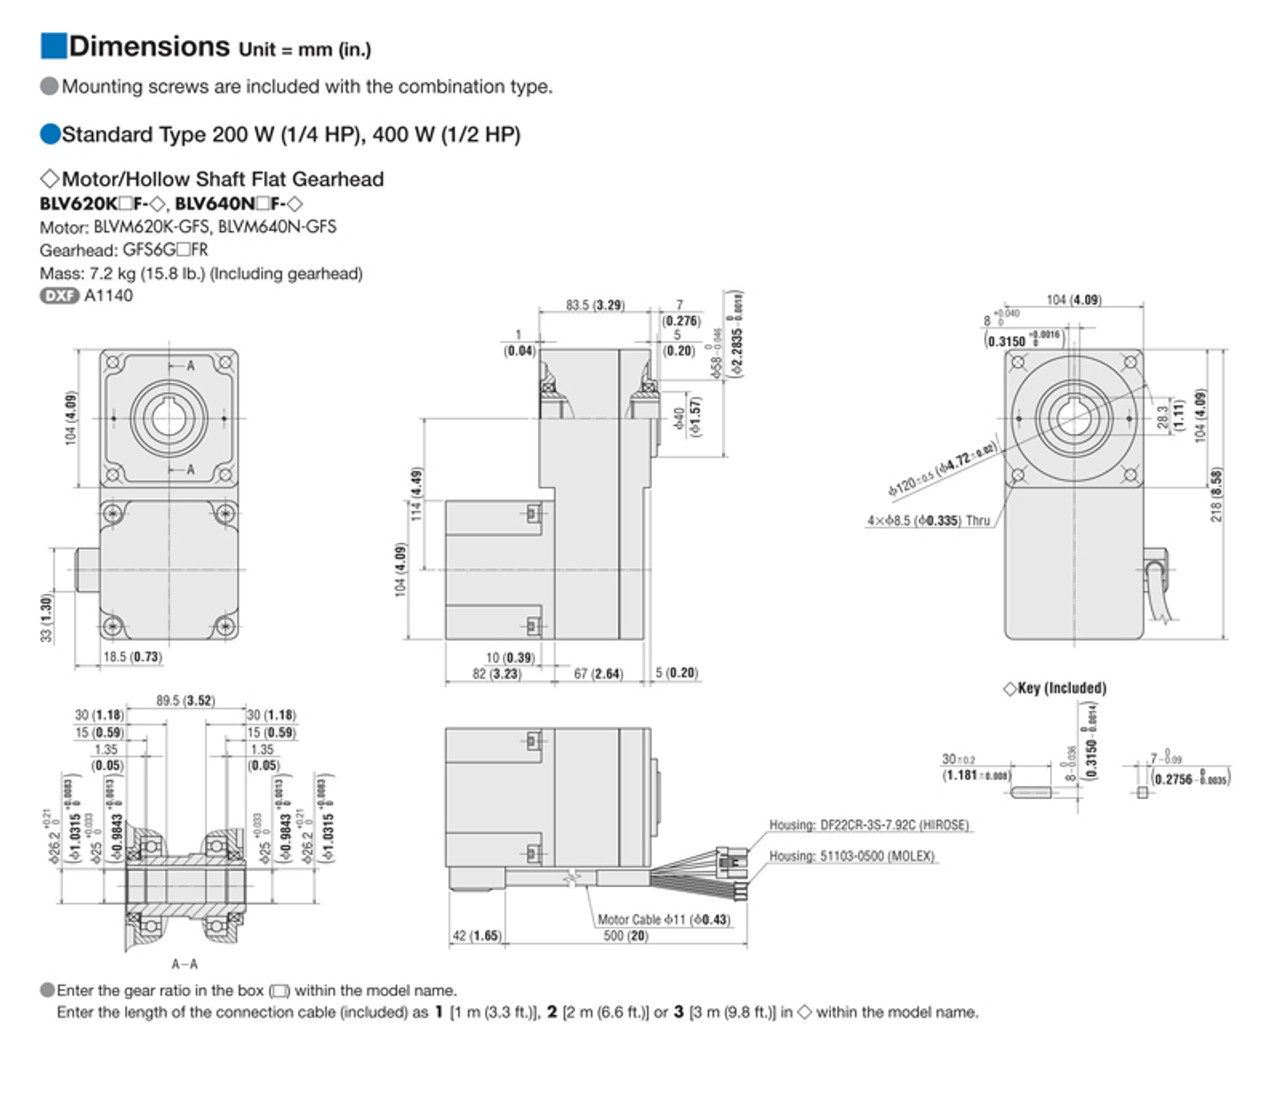 BLV640N15F - Dimensions